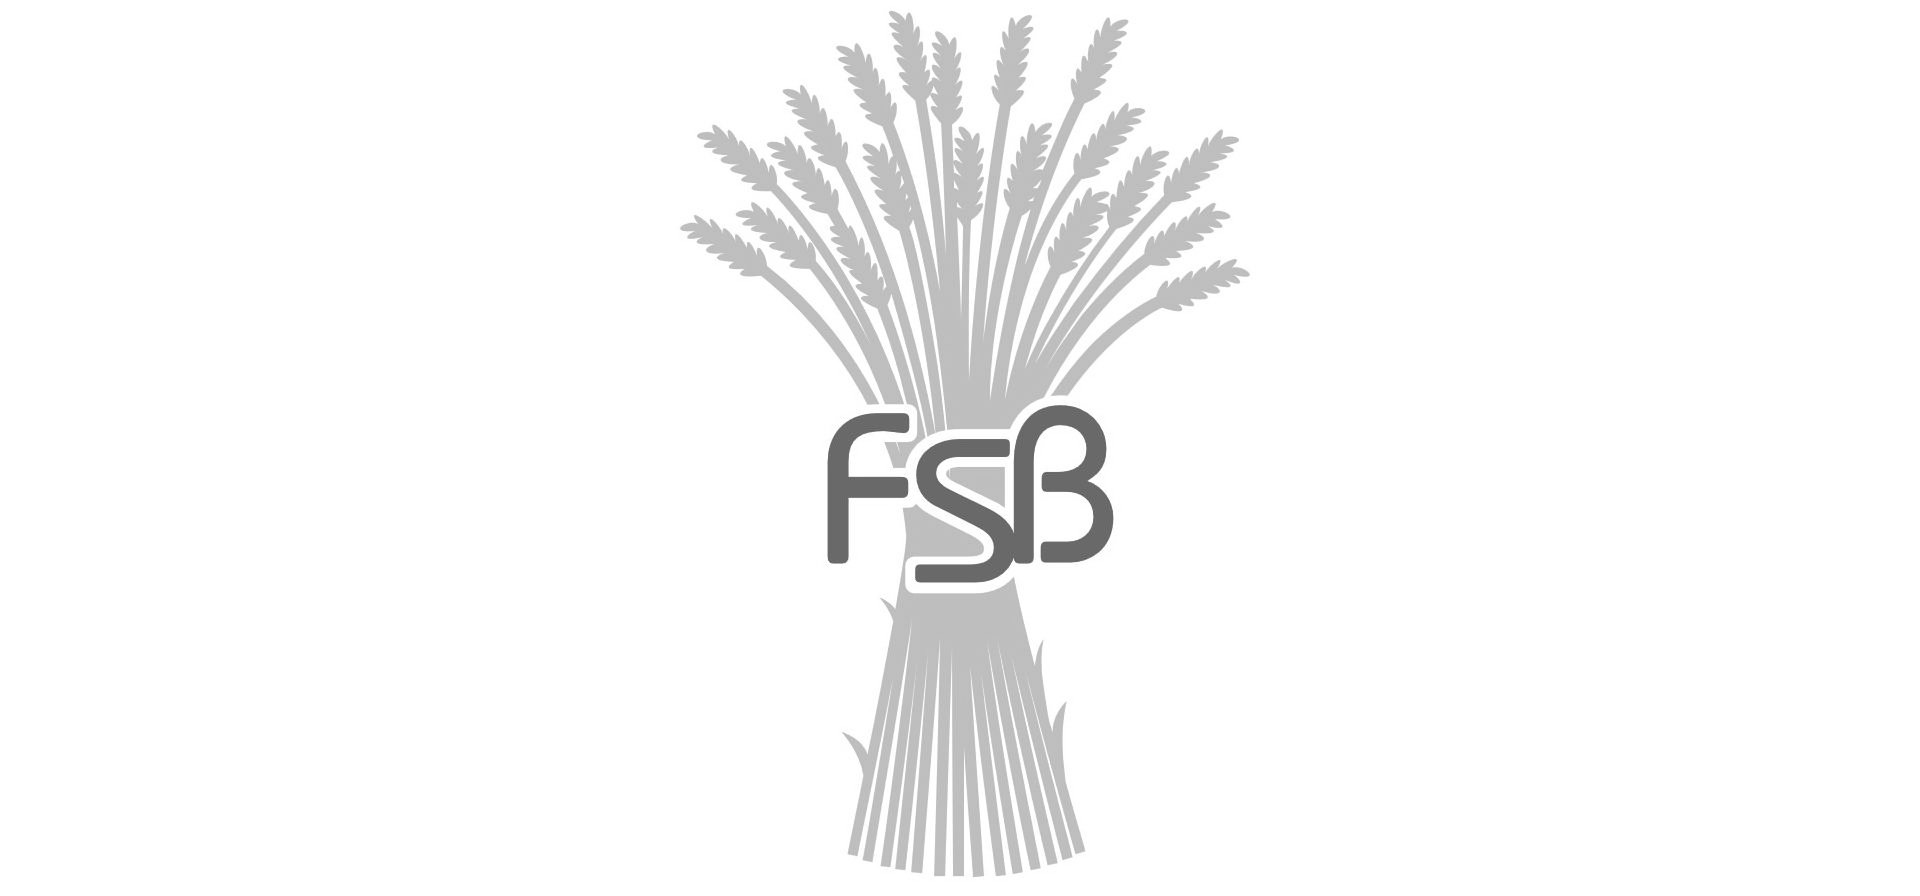  FSB